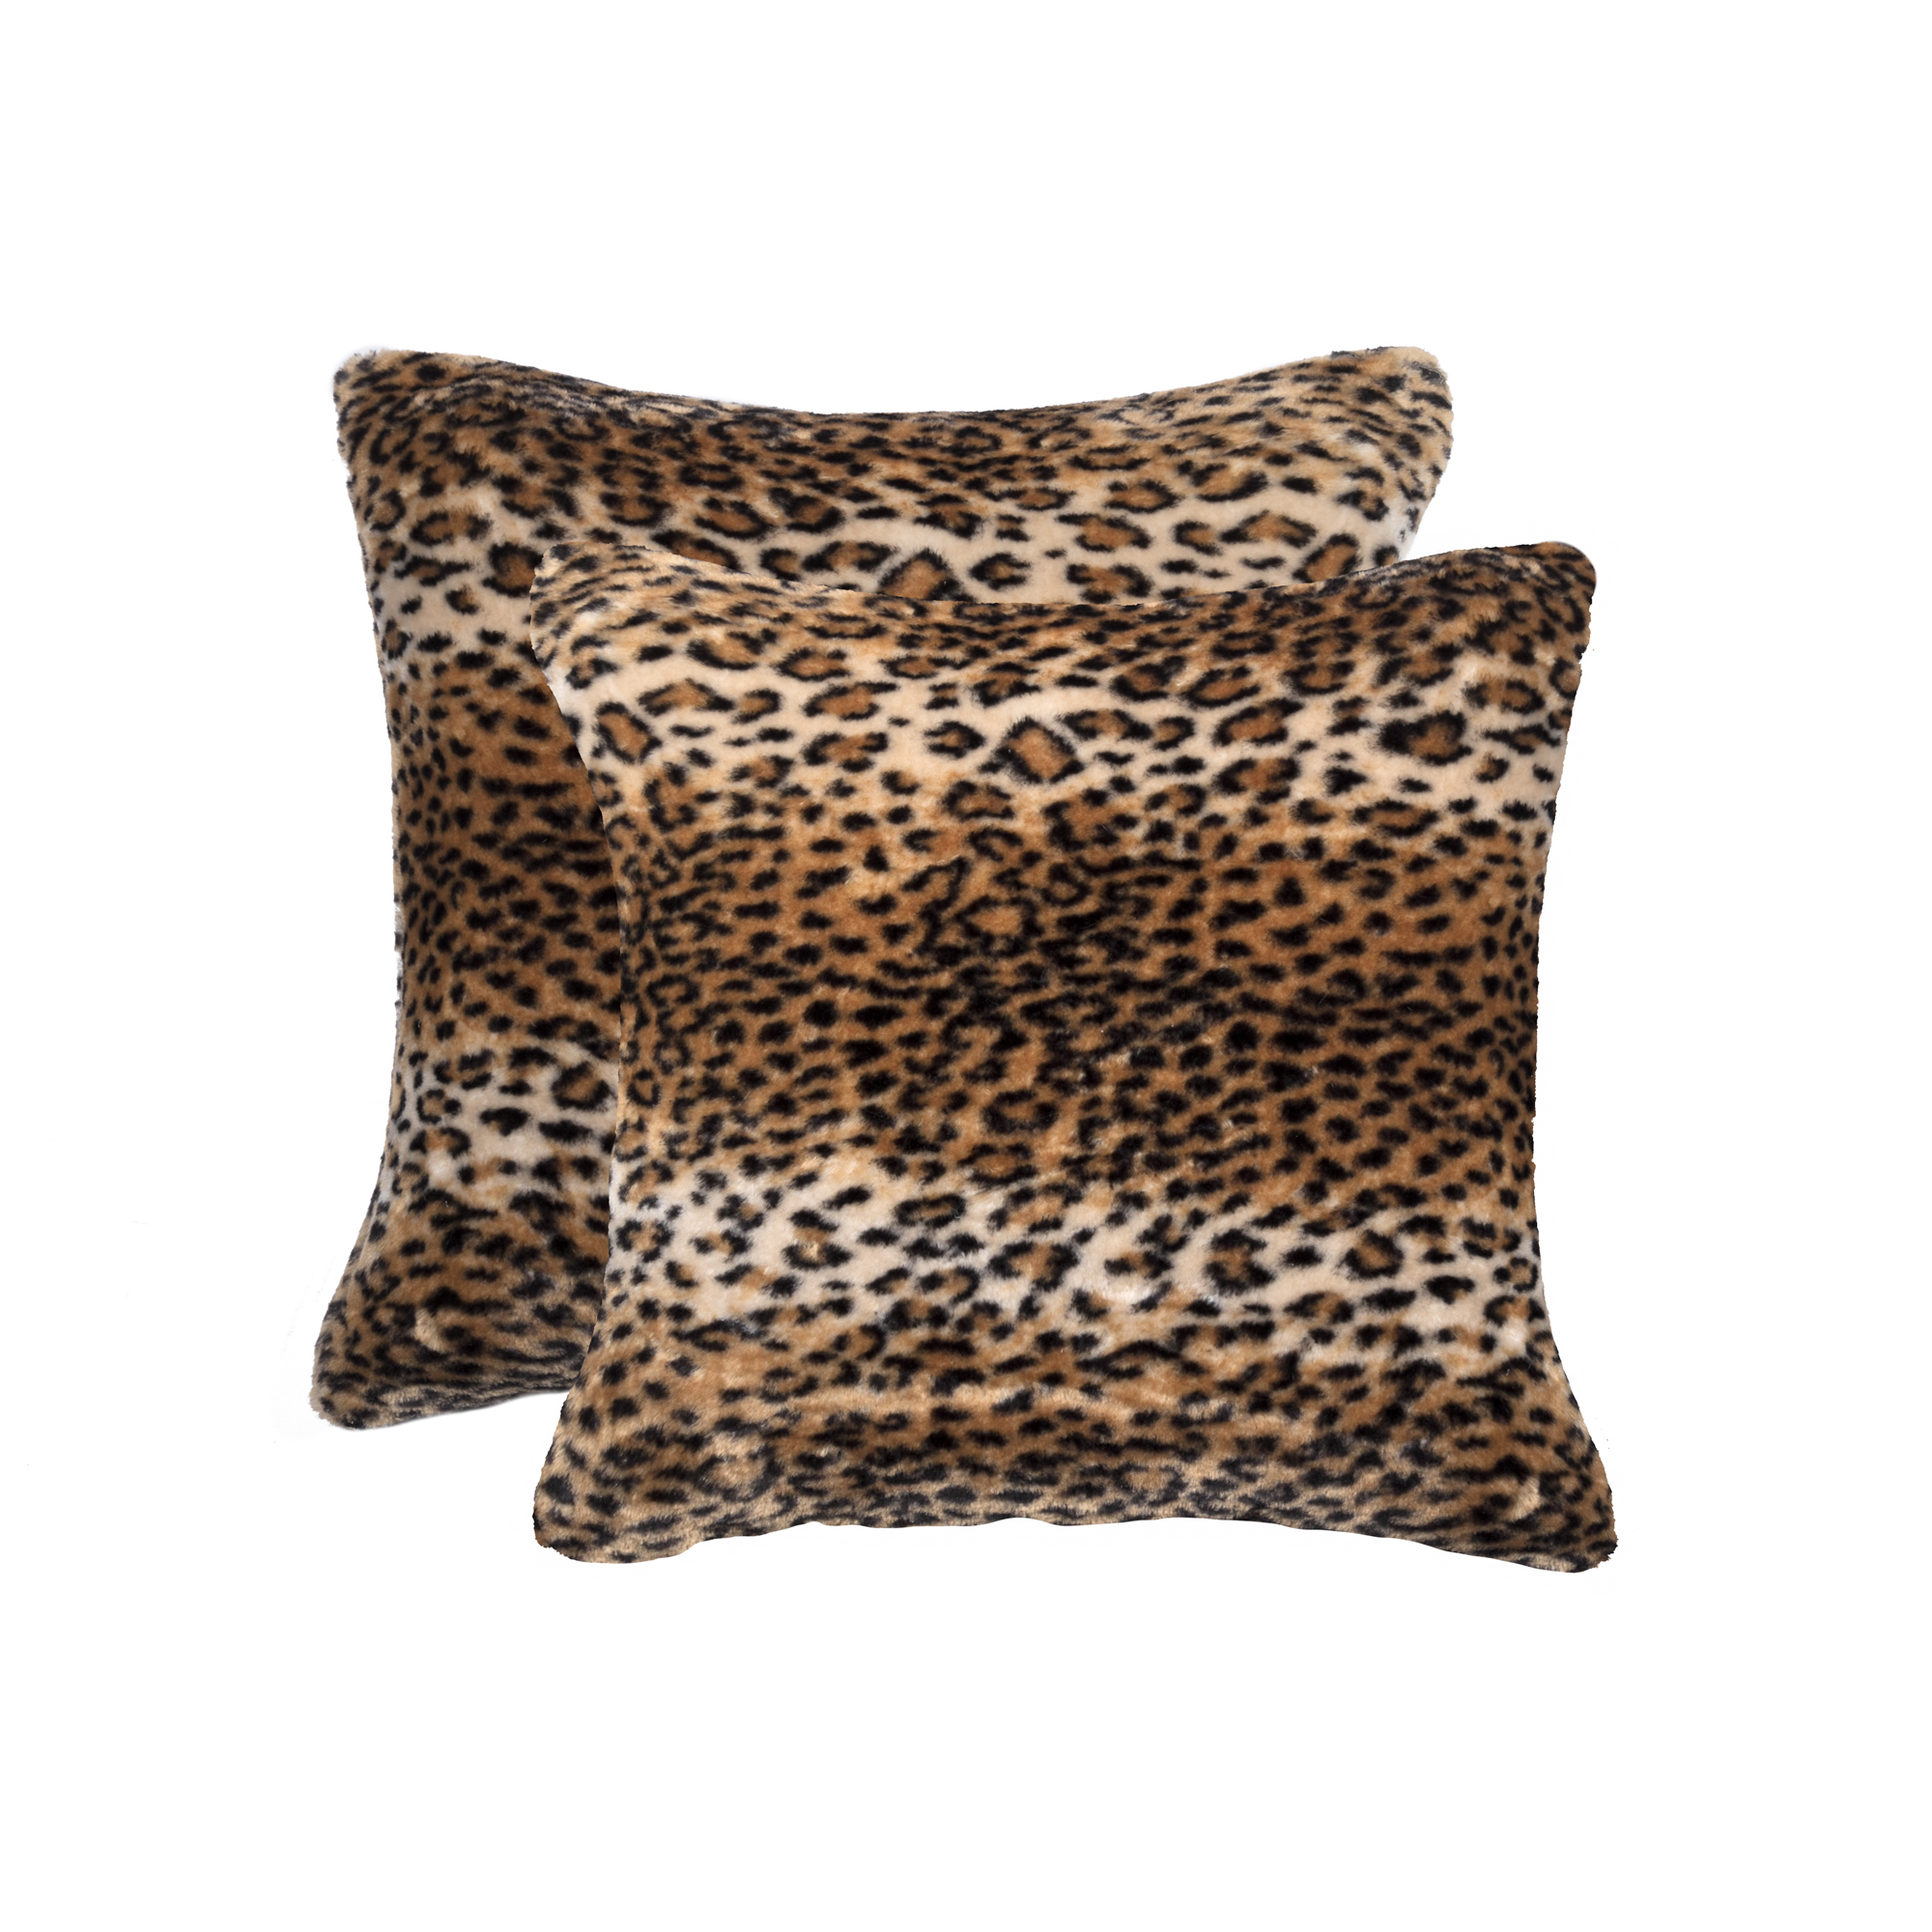 2 Pack Belton Faux Sheepskin Fur Pillow 18"x18" El Paso Leopard